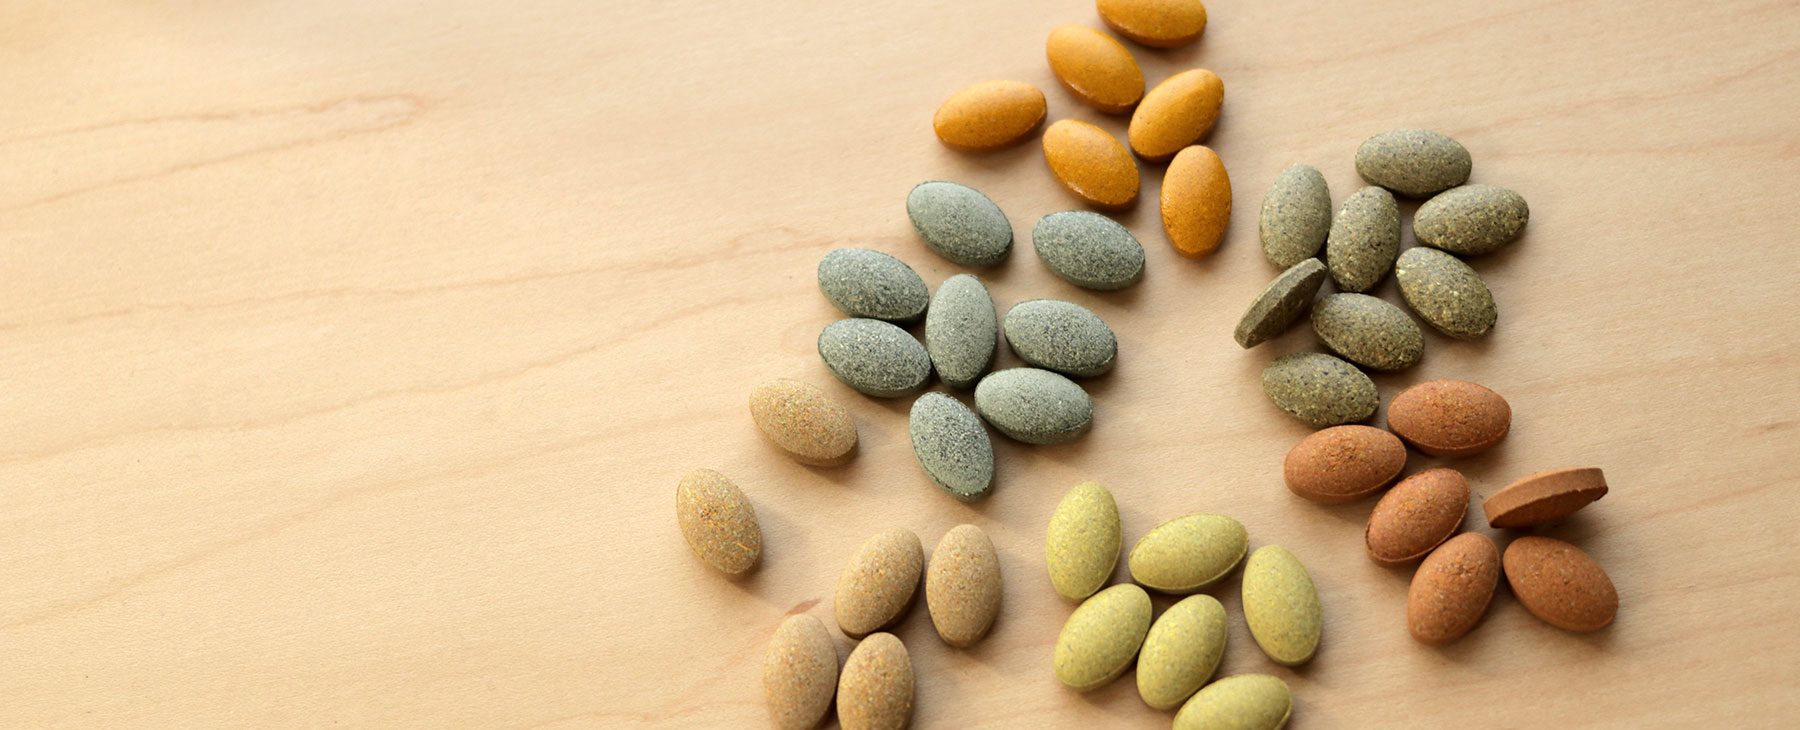 Herbal Tablets